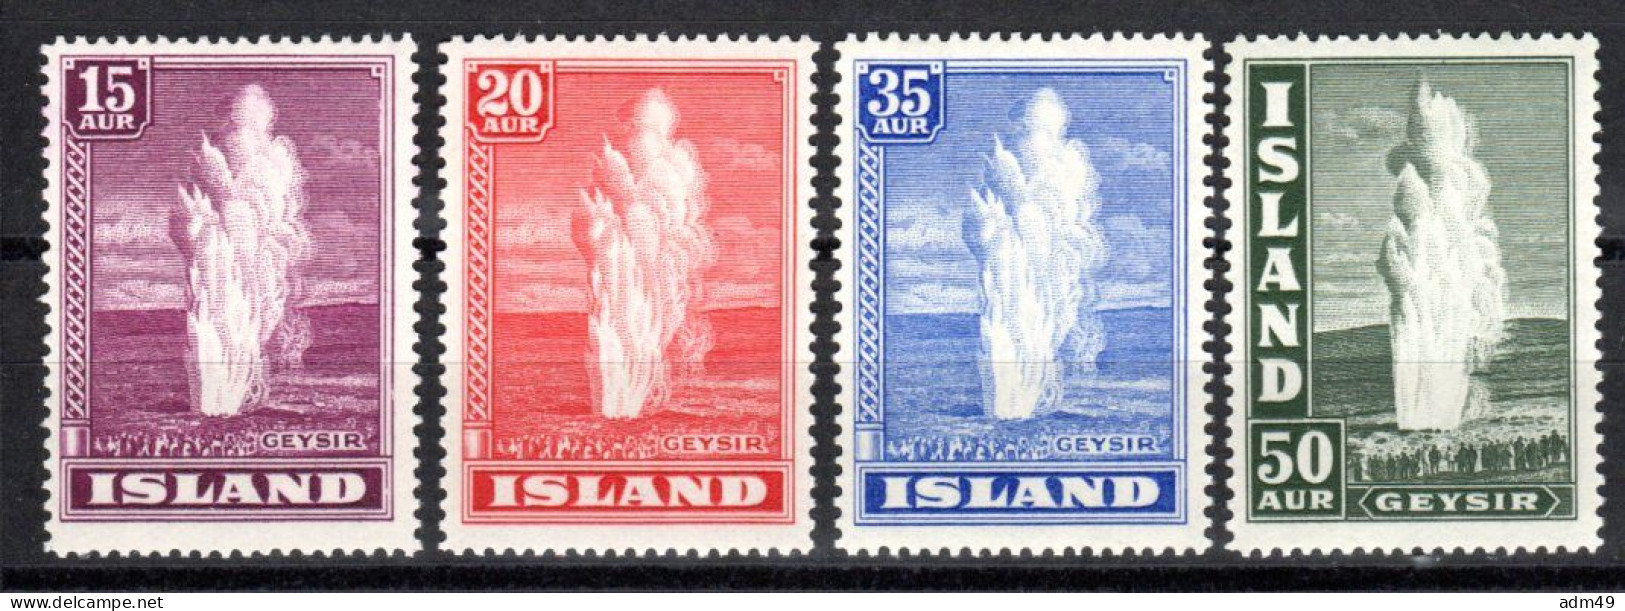 ISLAND, 1938, Freimarken Landestypische Motive, Postfrisch ** - Unused Stamps